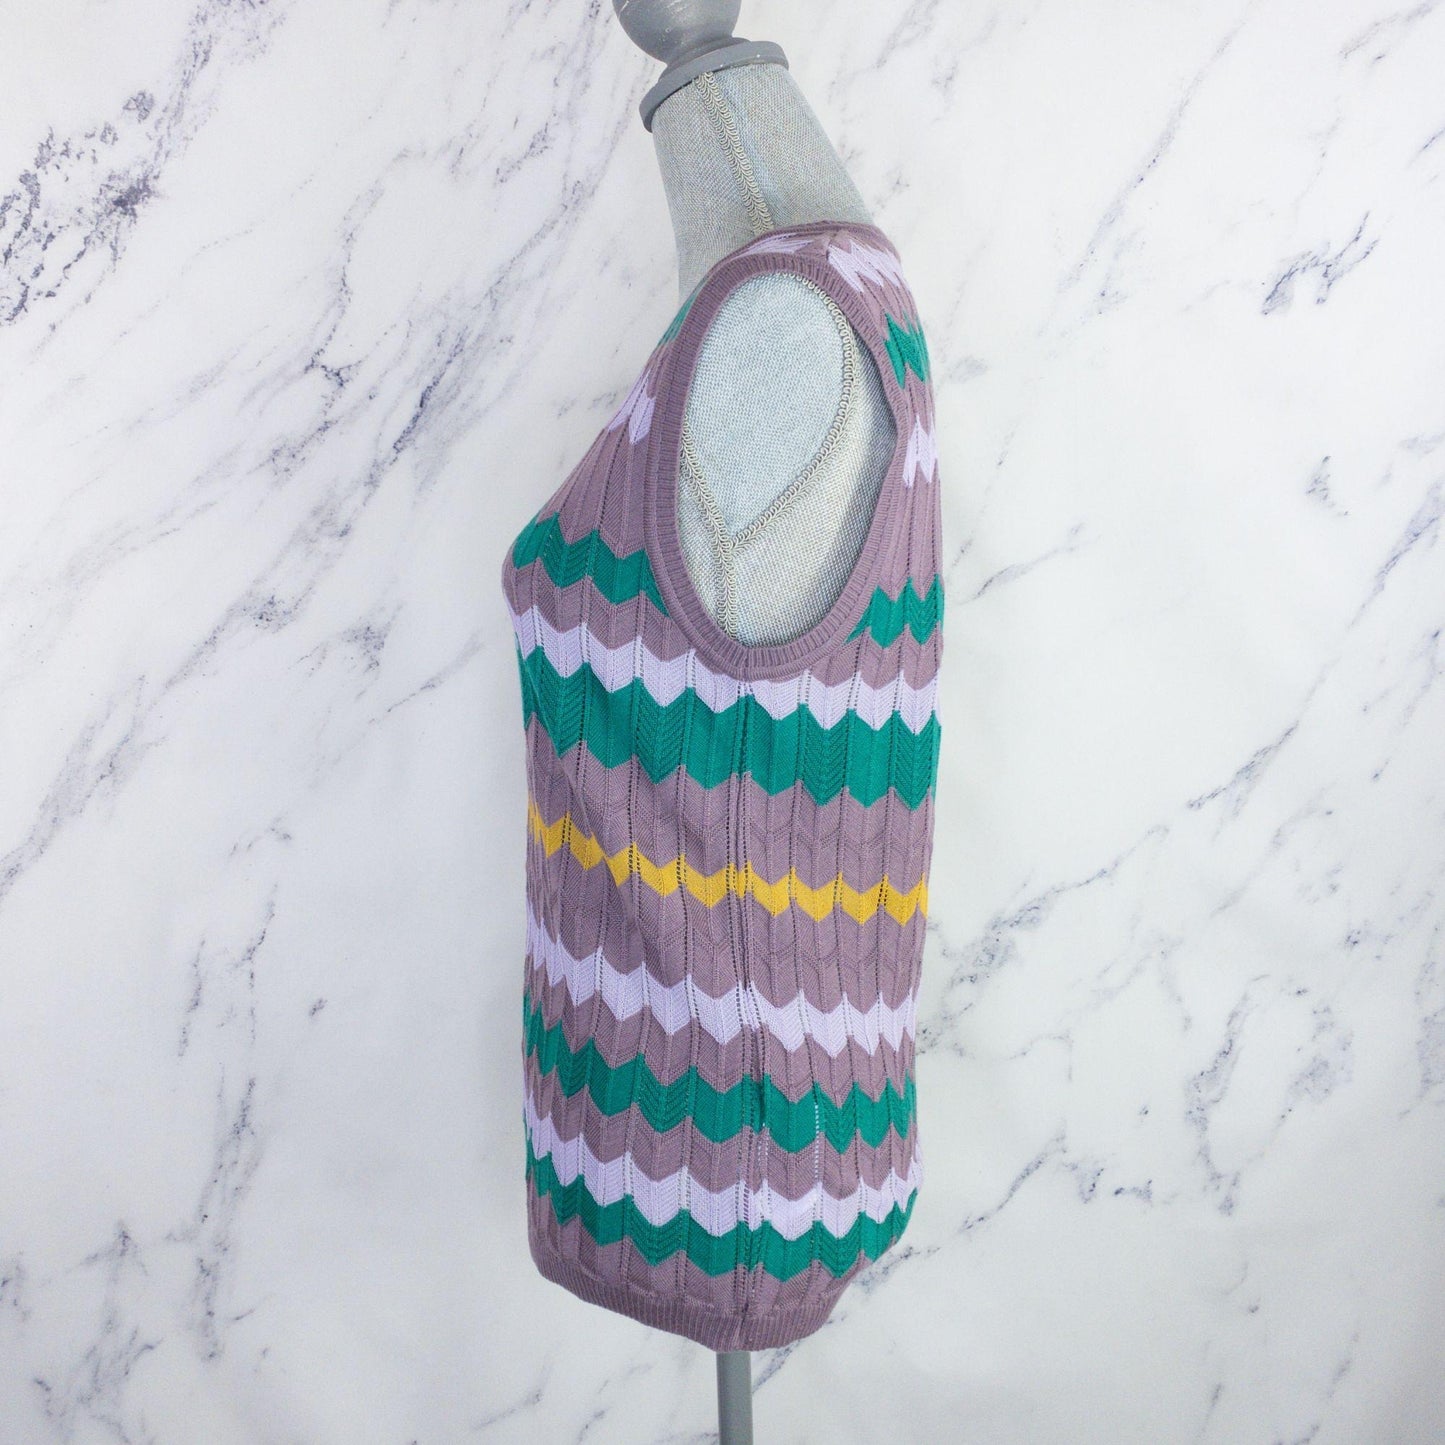 M Missoni | Crochet-Knit Top | Light Purple | Sz: IT 44/US 8